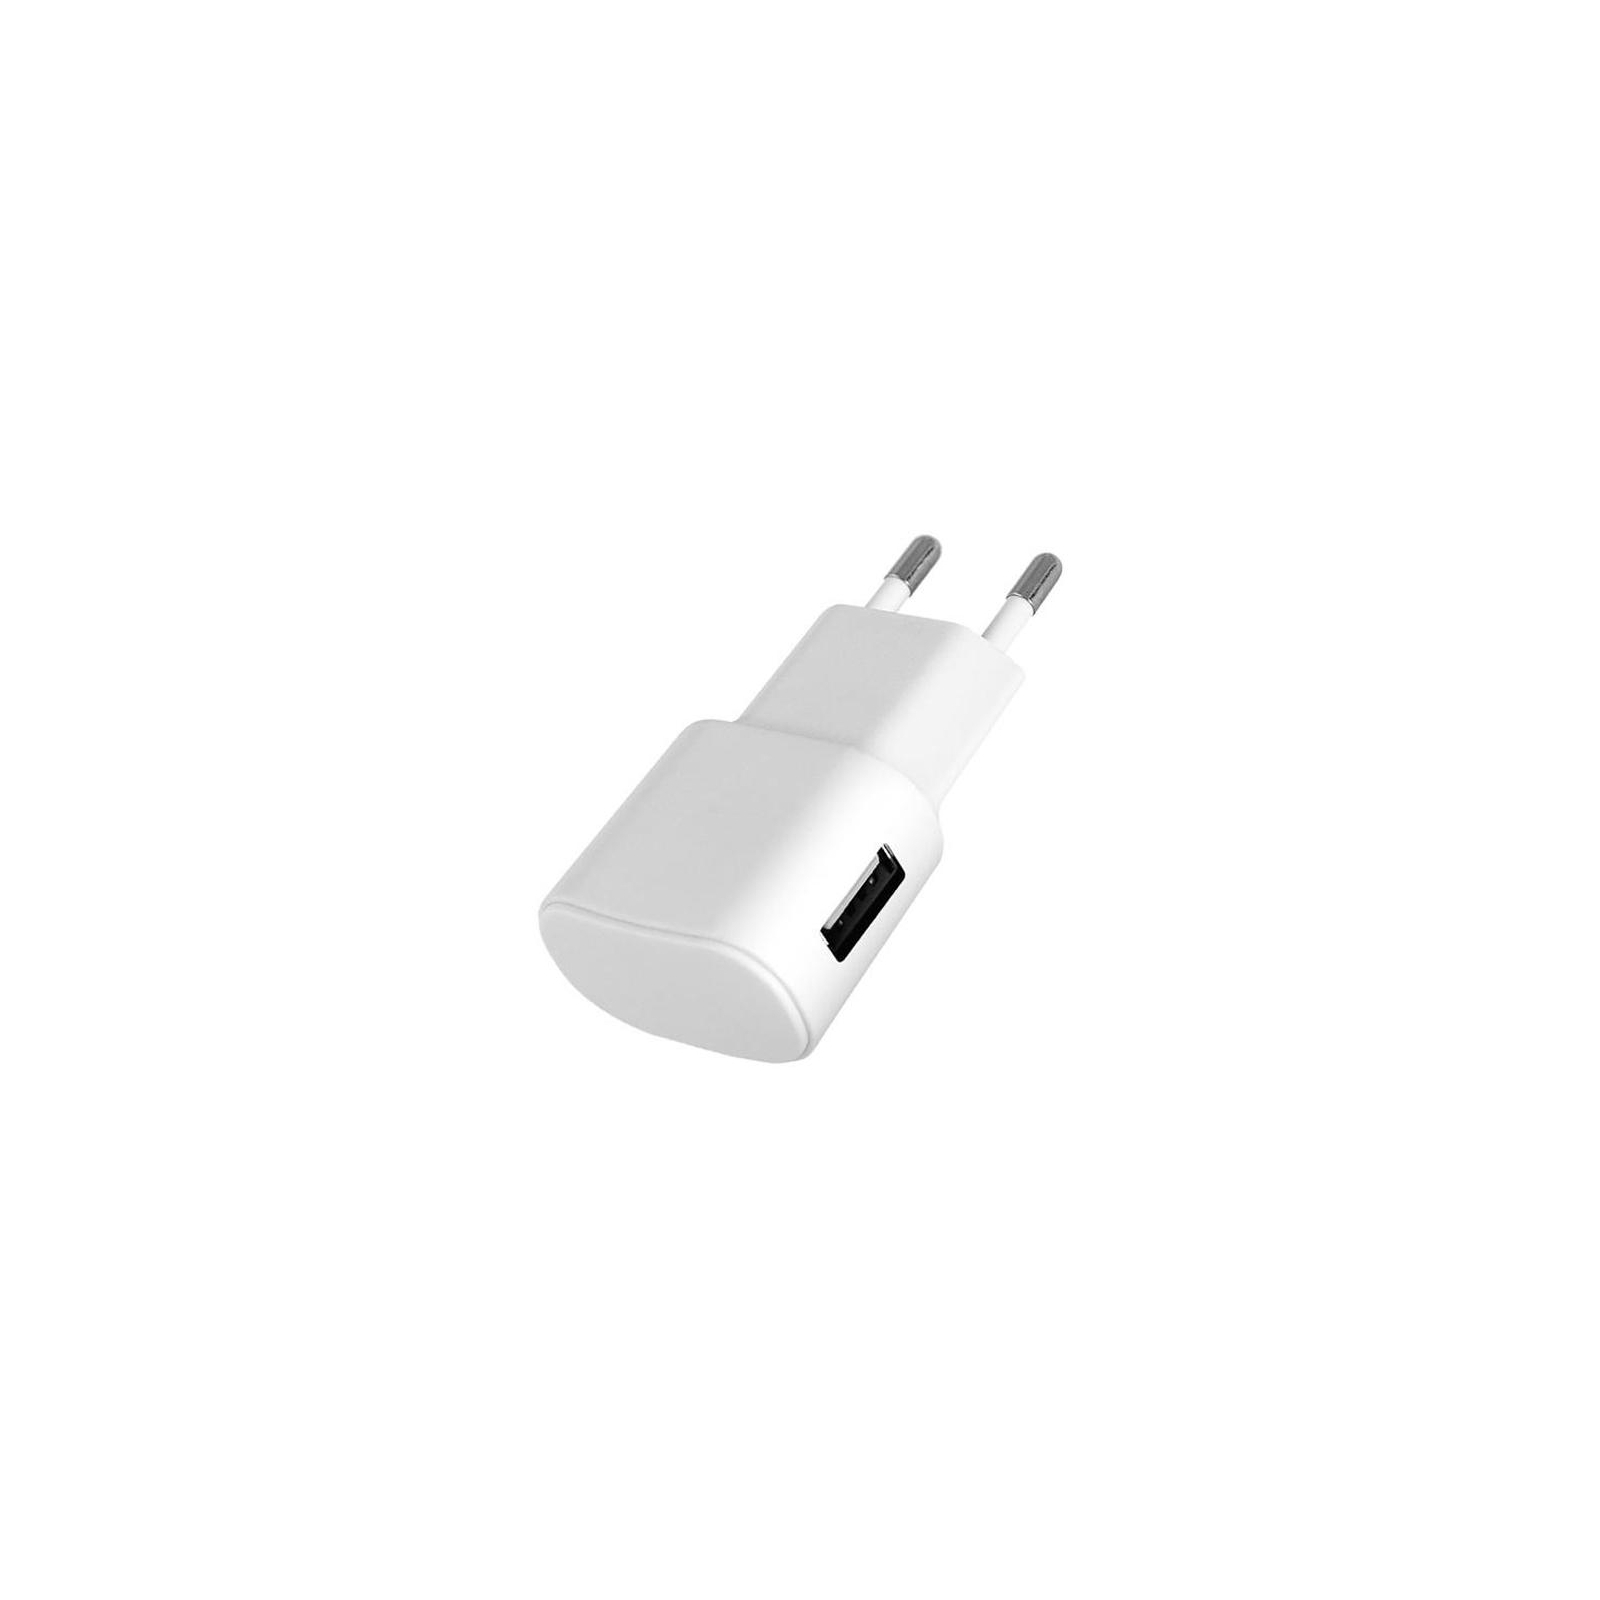 Зарядное устройство Florence USB, 1.0A white (FW-1U010W)